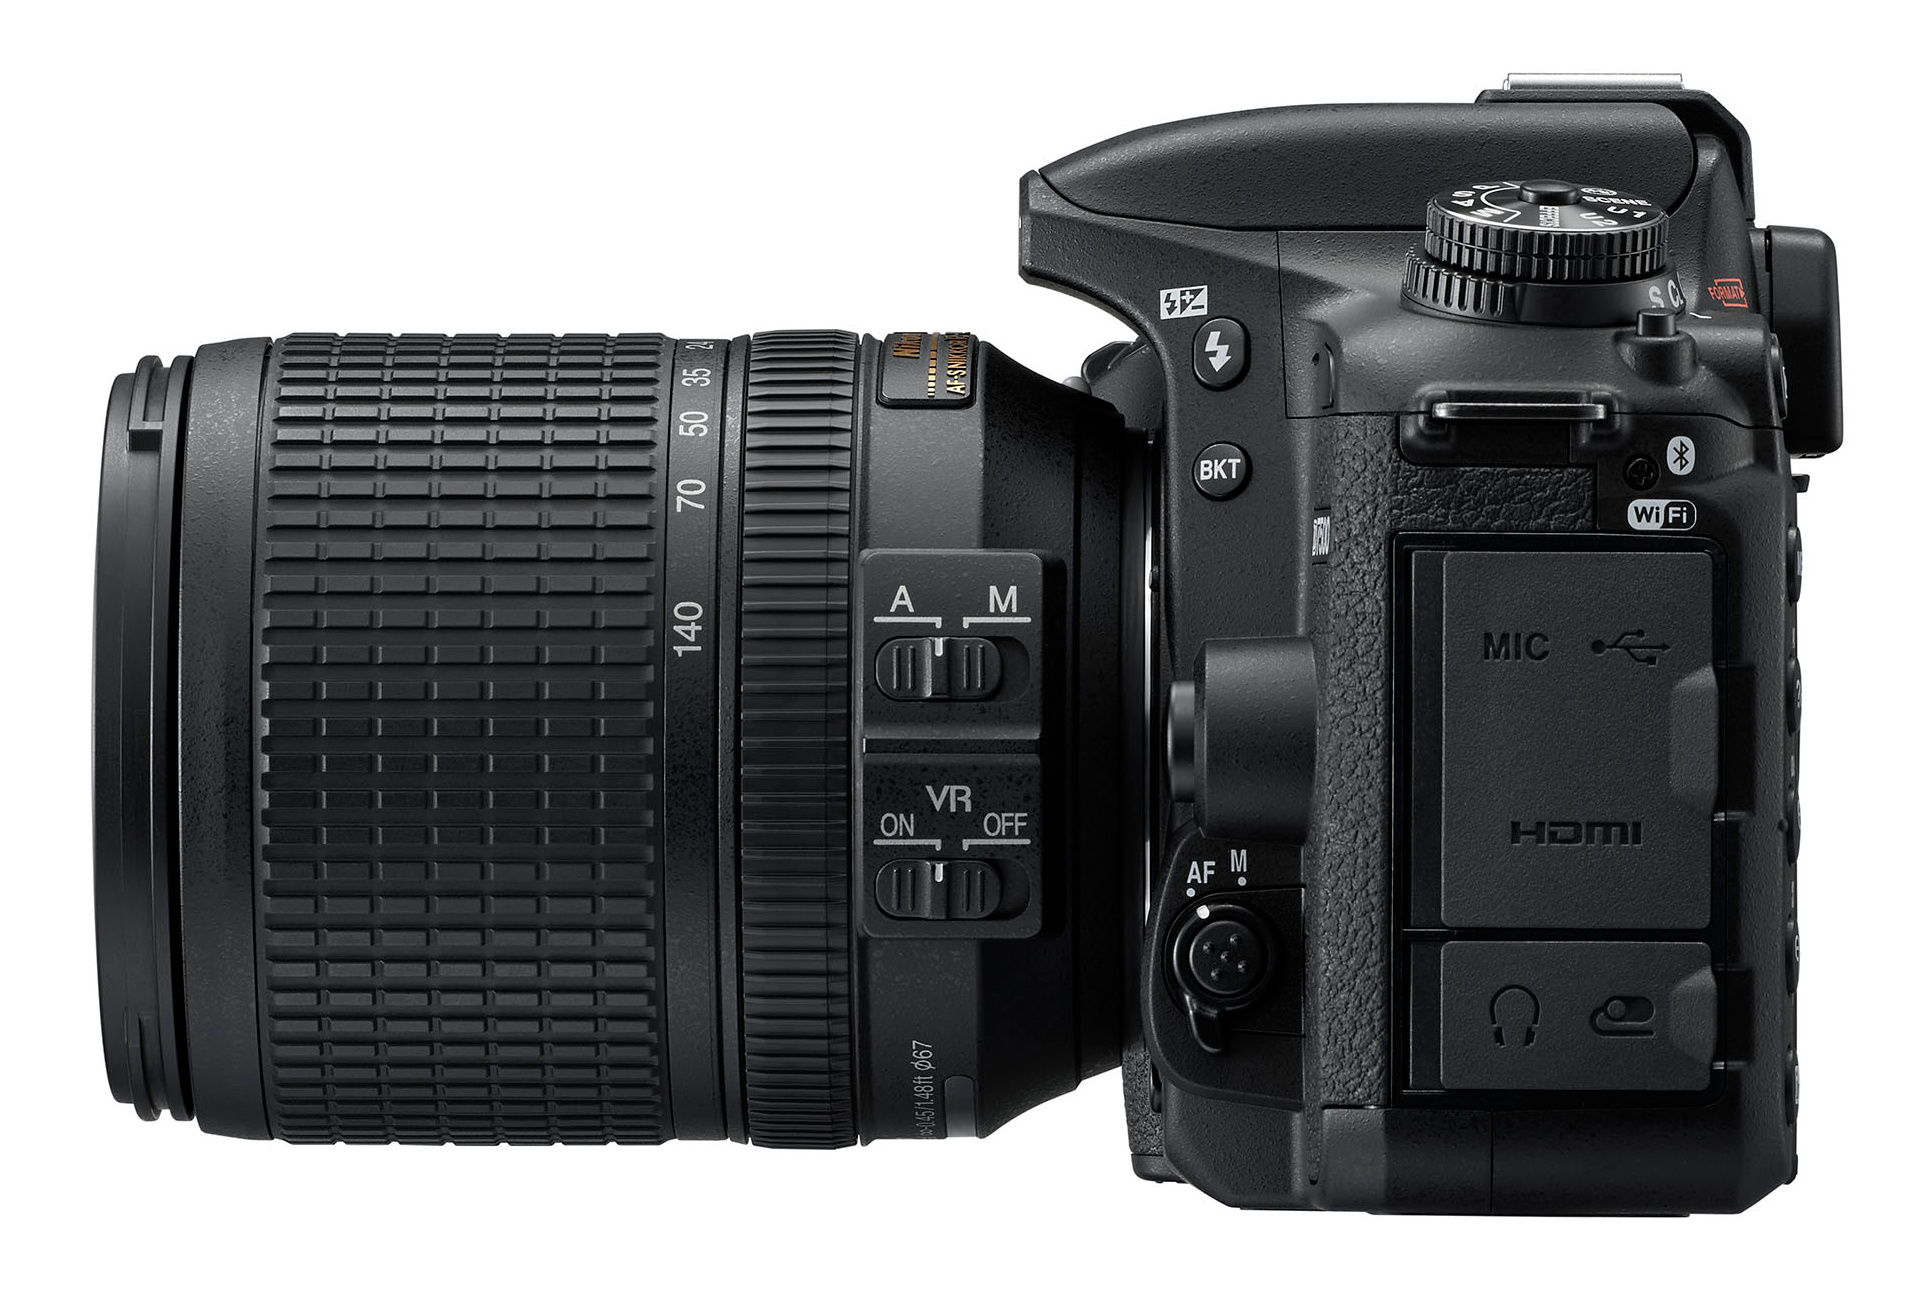 Nikon D7500 18-140mm Kit 20.9MP DSLR Camera With AF-S DX NIKKOR 18-140mm F/3.5-5.6G ED VR Lens | Full Systems